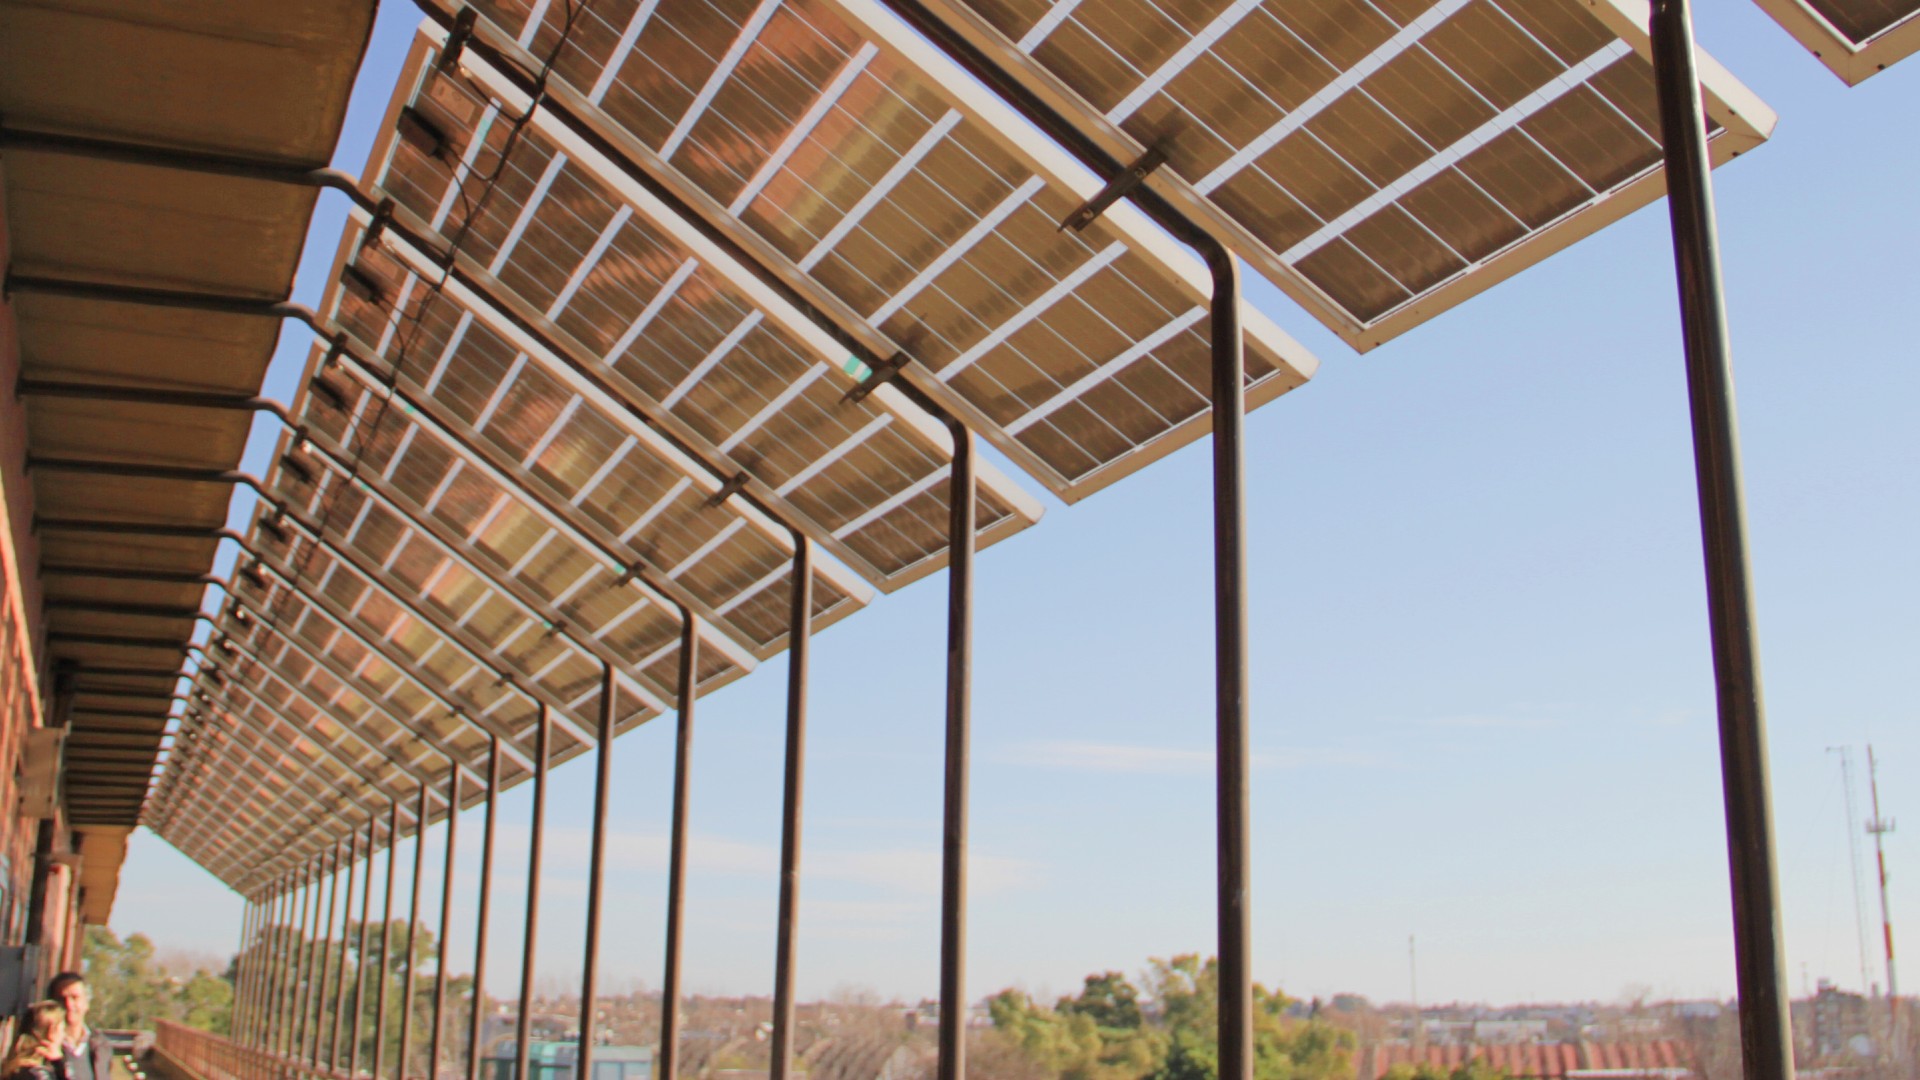 El proyecto “Sistema de Generación Eléctrica Distribuida"  posiciona a la CNEA como el principal organismo público de ciencia y tecnología en cuanto al desarrollo de la Energía Solar Fotovoltaica distribuida con conexión a la red.